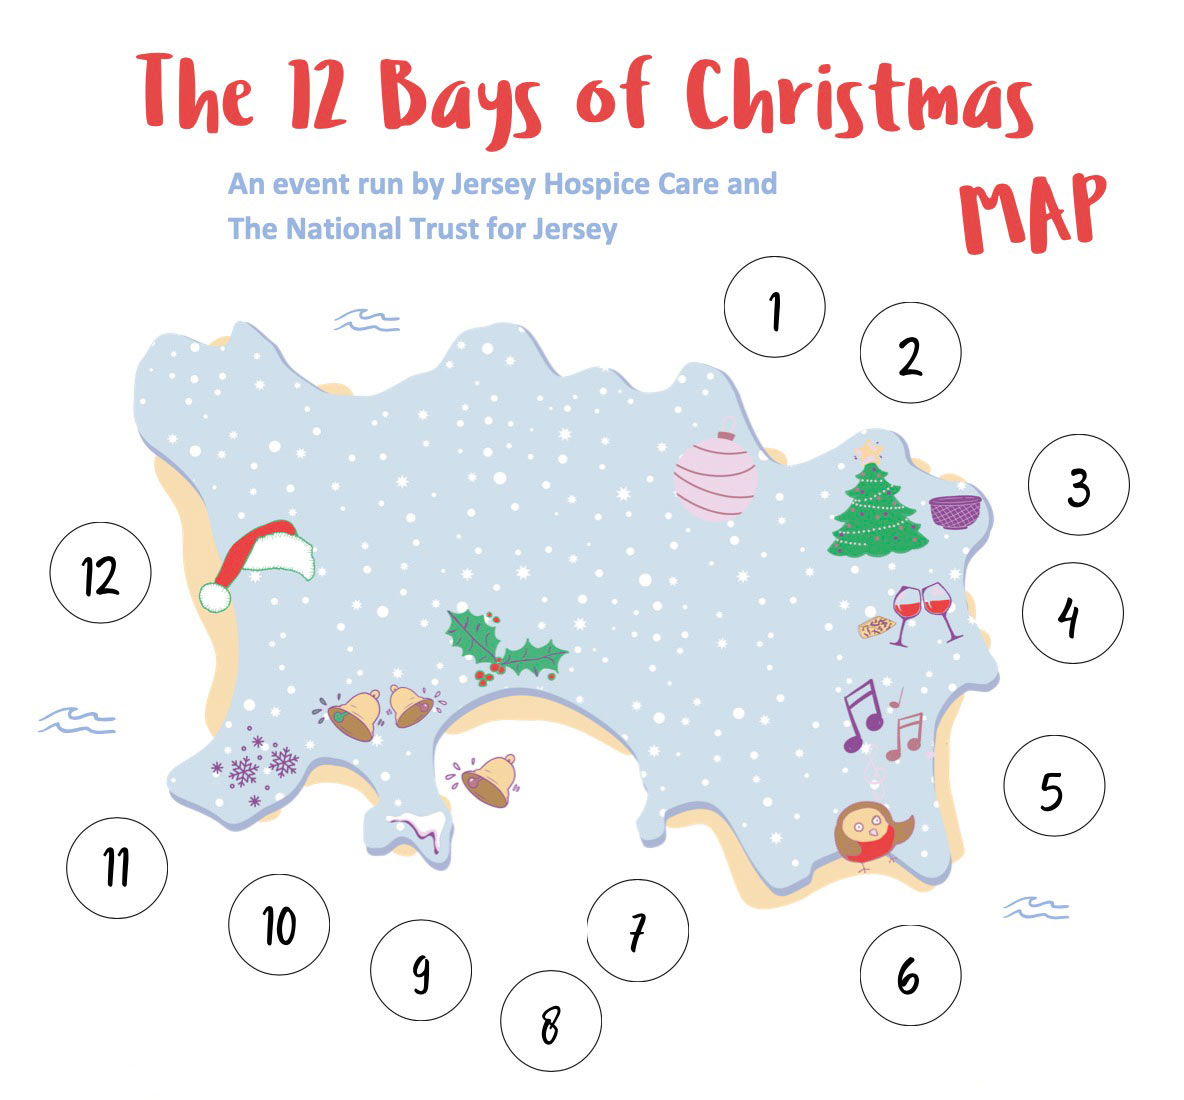 12 Bays of Christmas Map